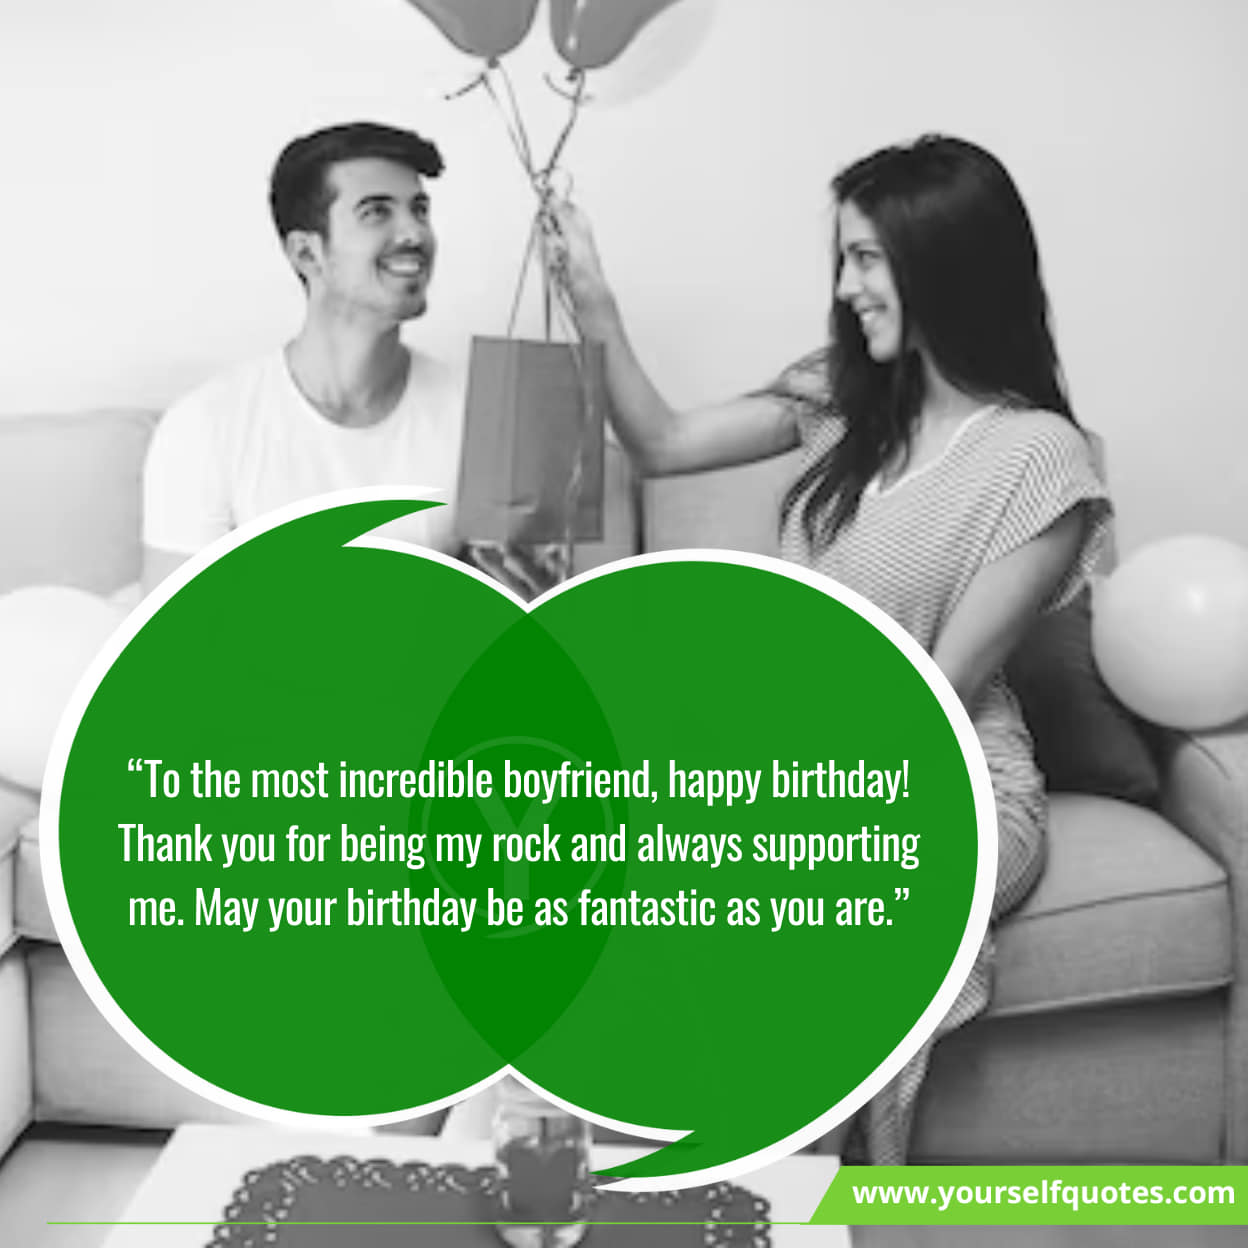 Happy birthday love messages for boyfriend